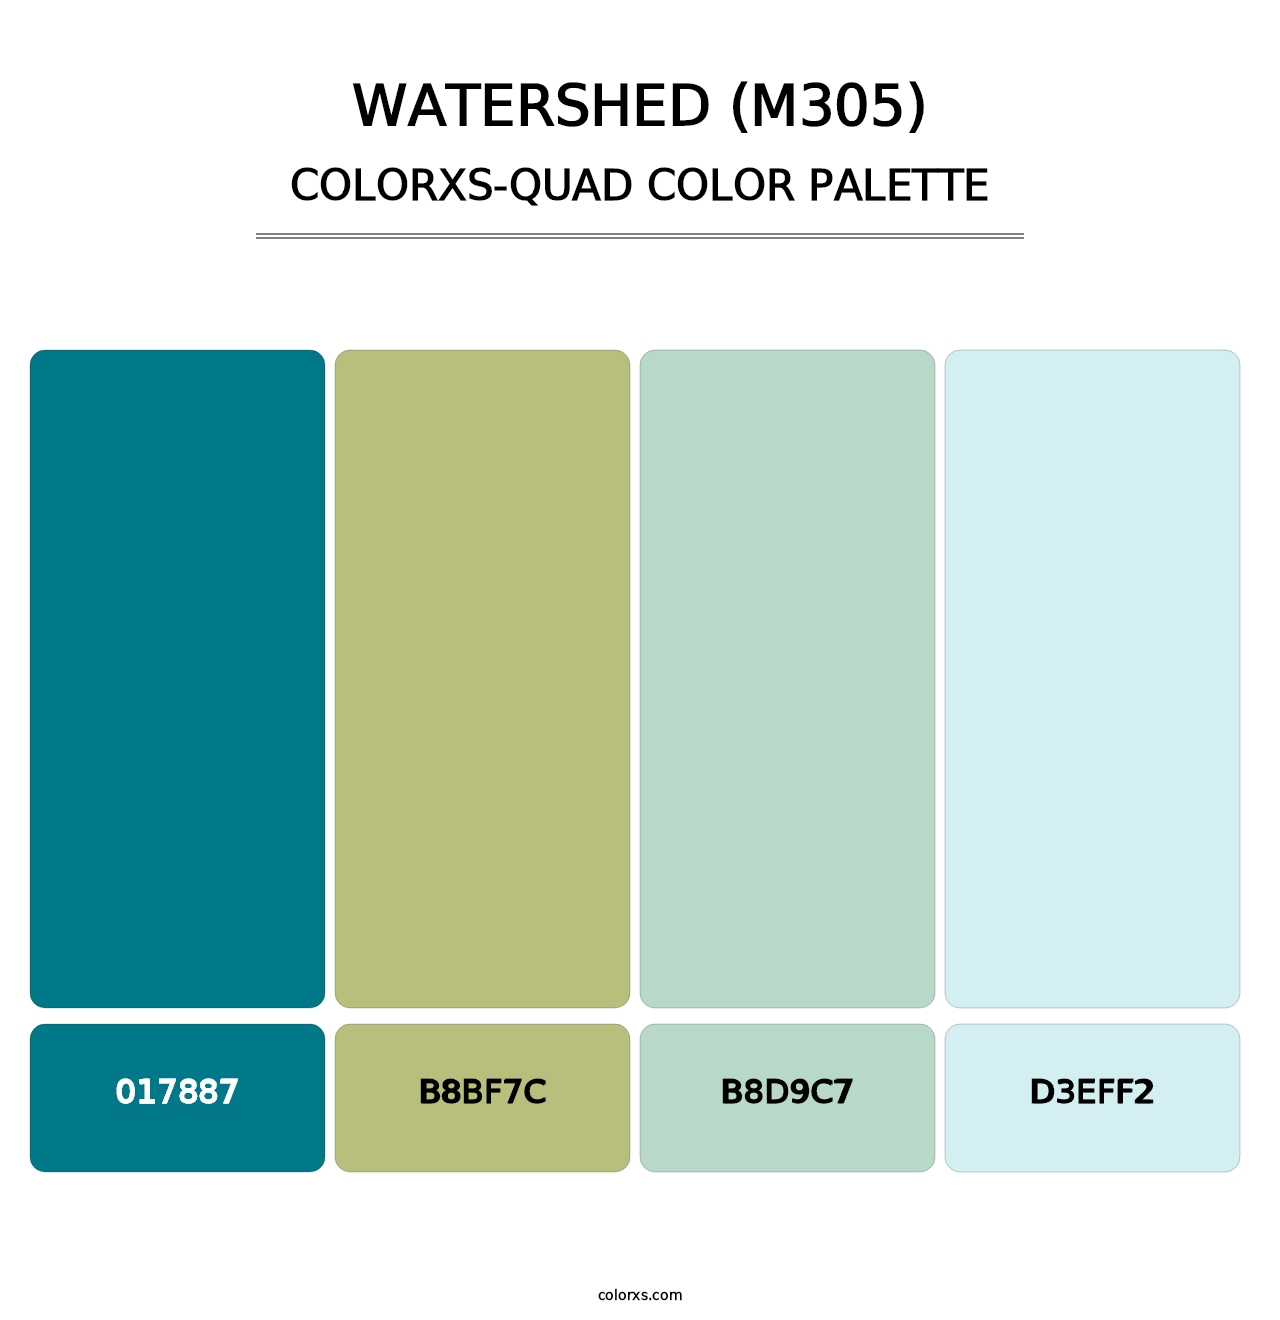 Watershed (M305) - Colorxs Quad Palette